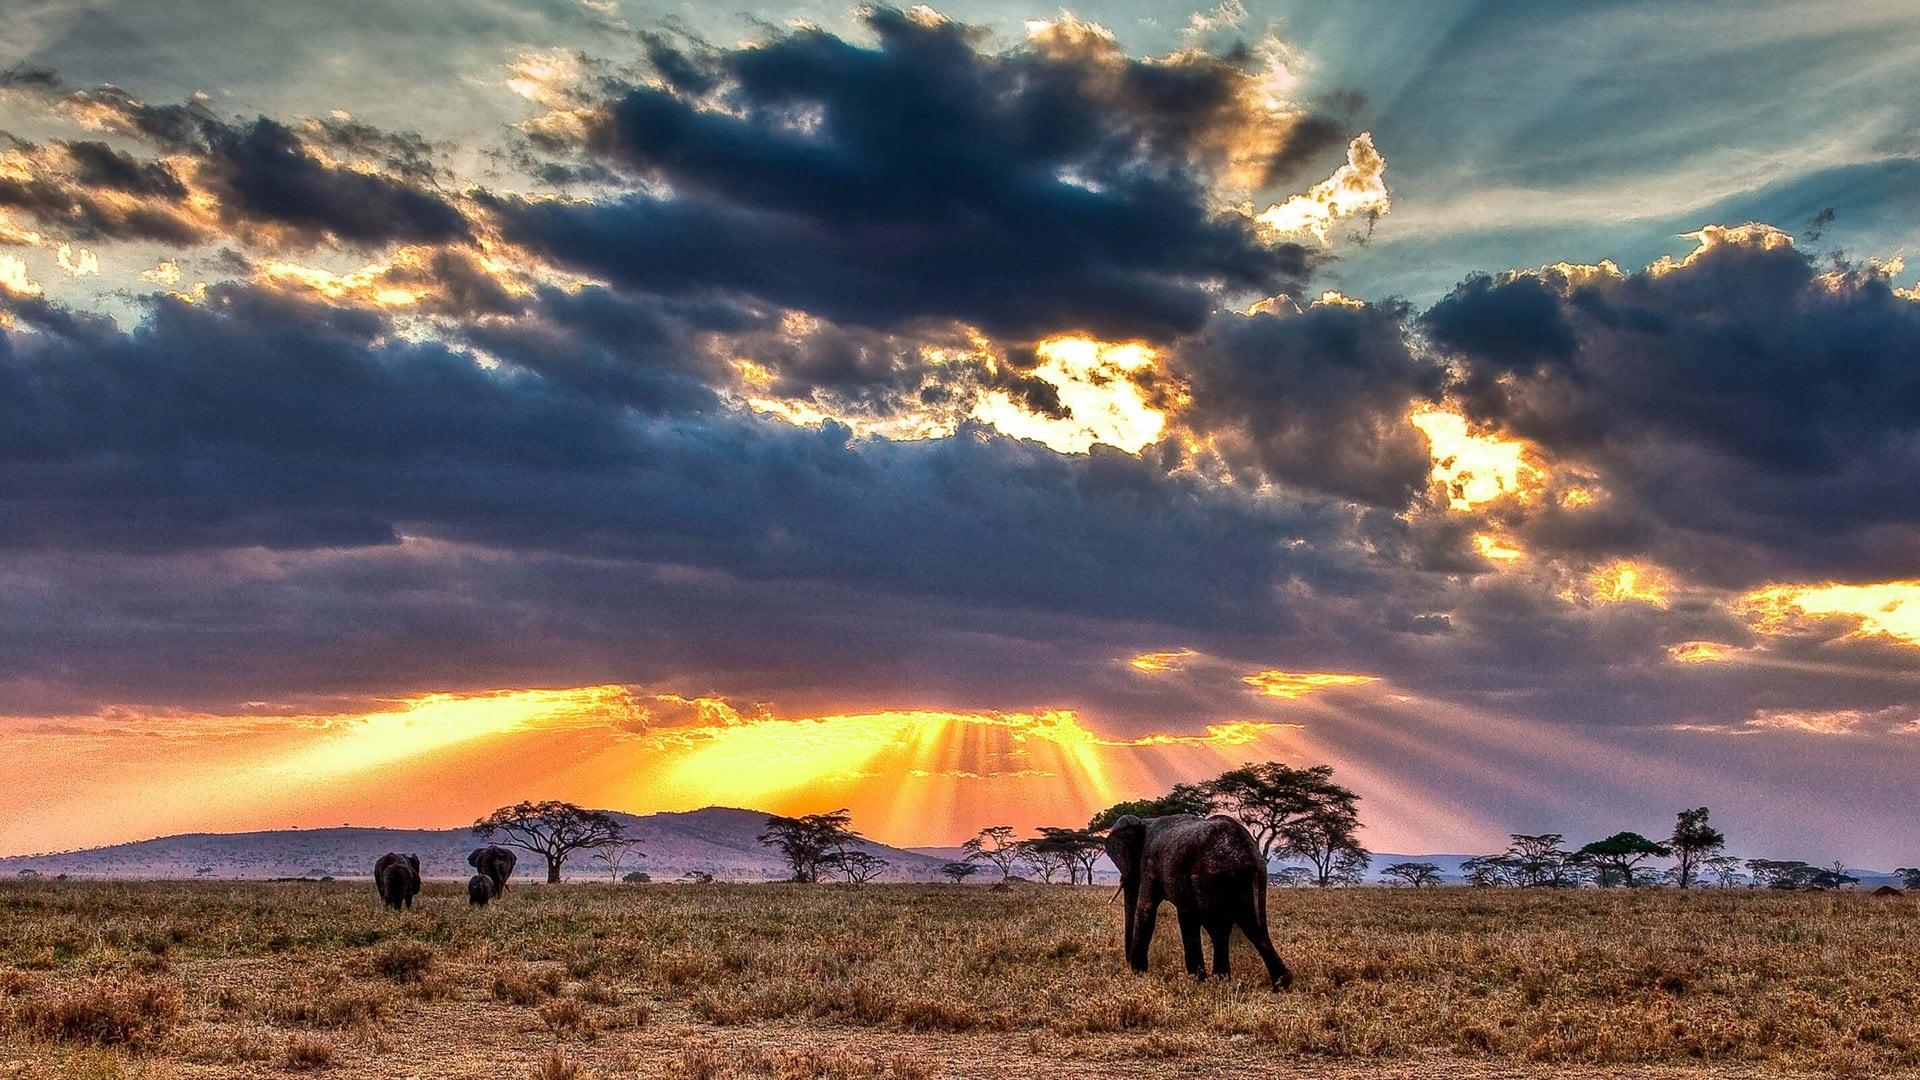 Nomads of the Serengeti backdrop